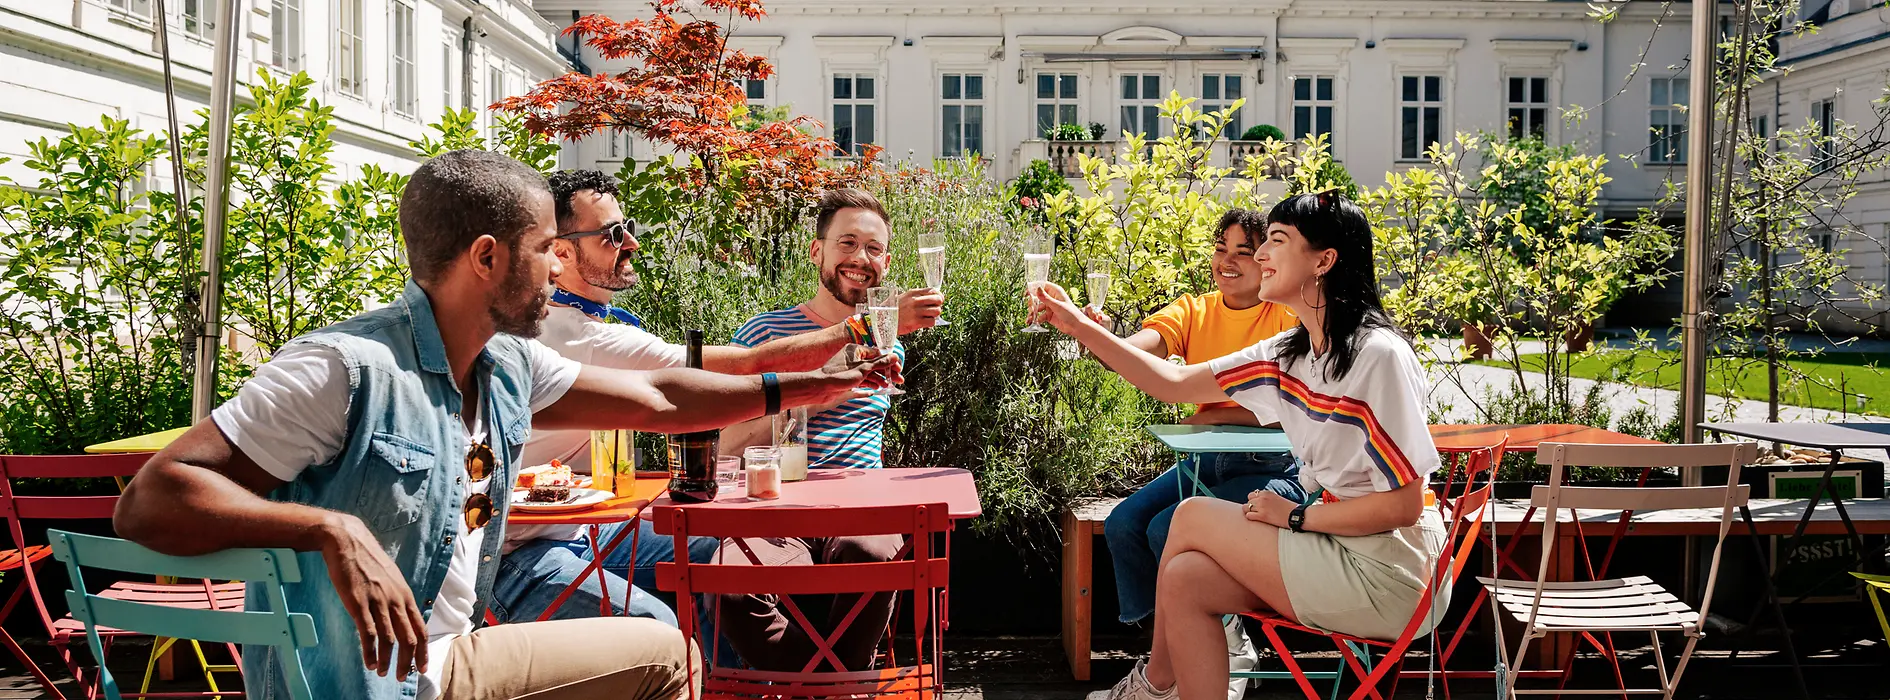 Un groupe de jeunes boit un verre en terrasse